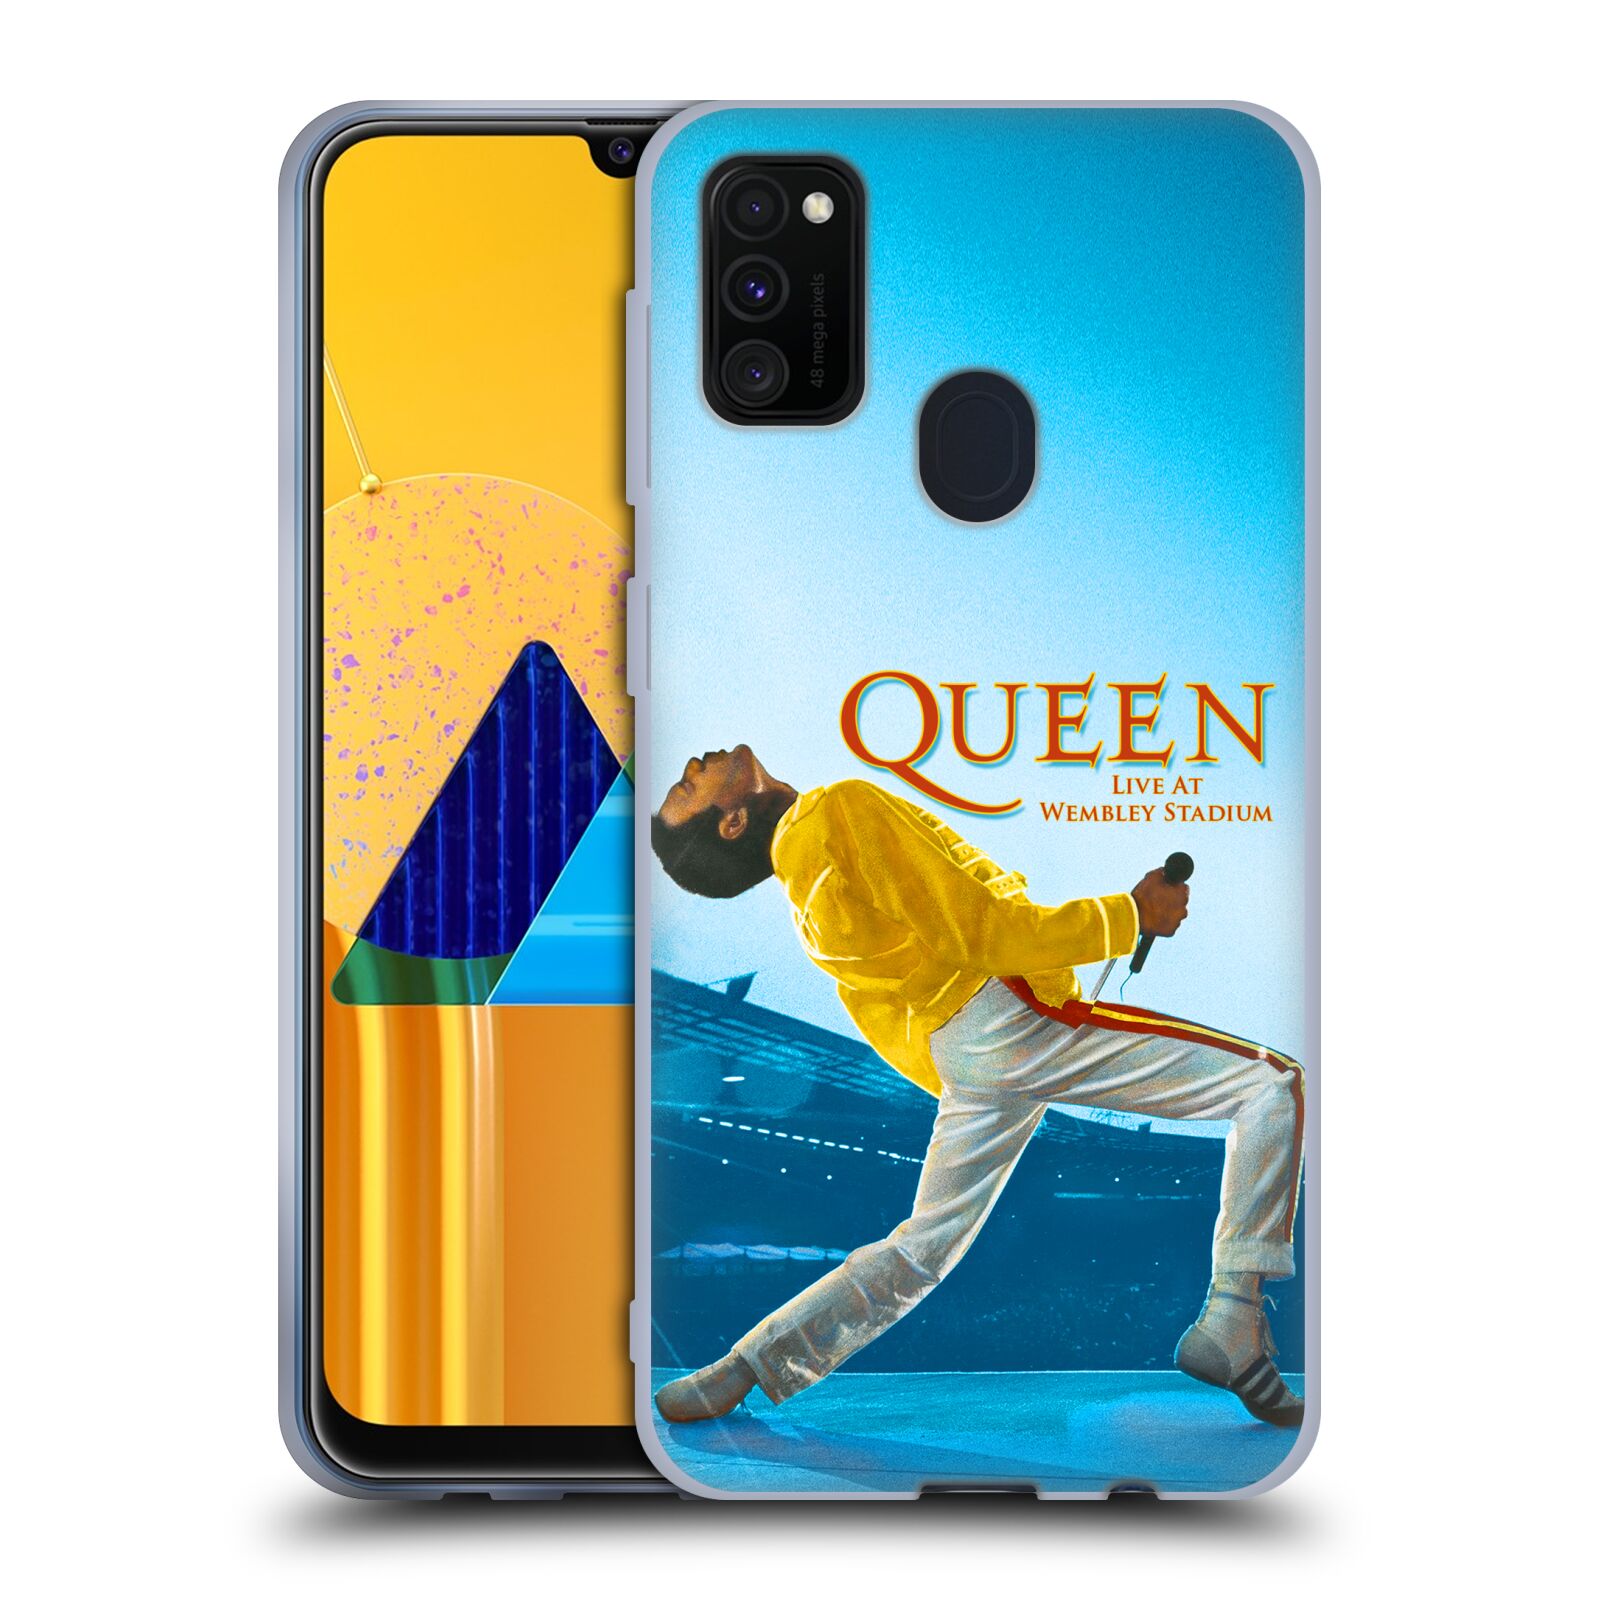 Silikonové pouzdro na mobil Samsung Galaxy M21 - Head Case - Queen - Freddie Mercury (Silikonový kryt, obal, pouzdro na mobilní telefon Samsung Galaxy M21 M215F Dual Sim s motivem Queen - Freddie Mercury)